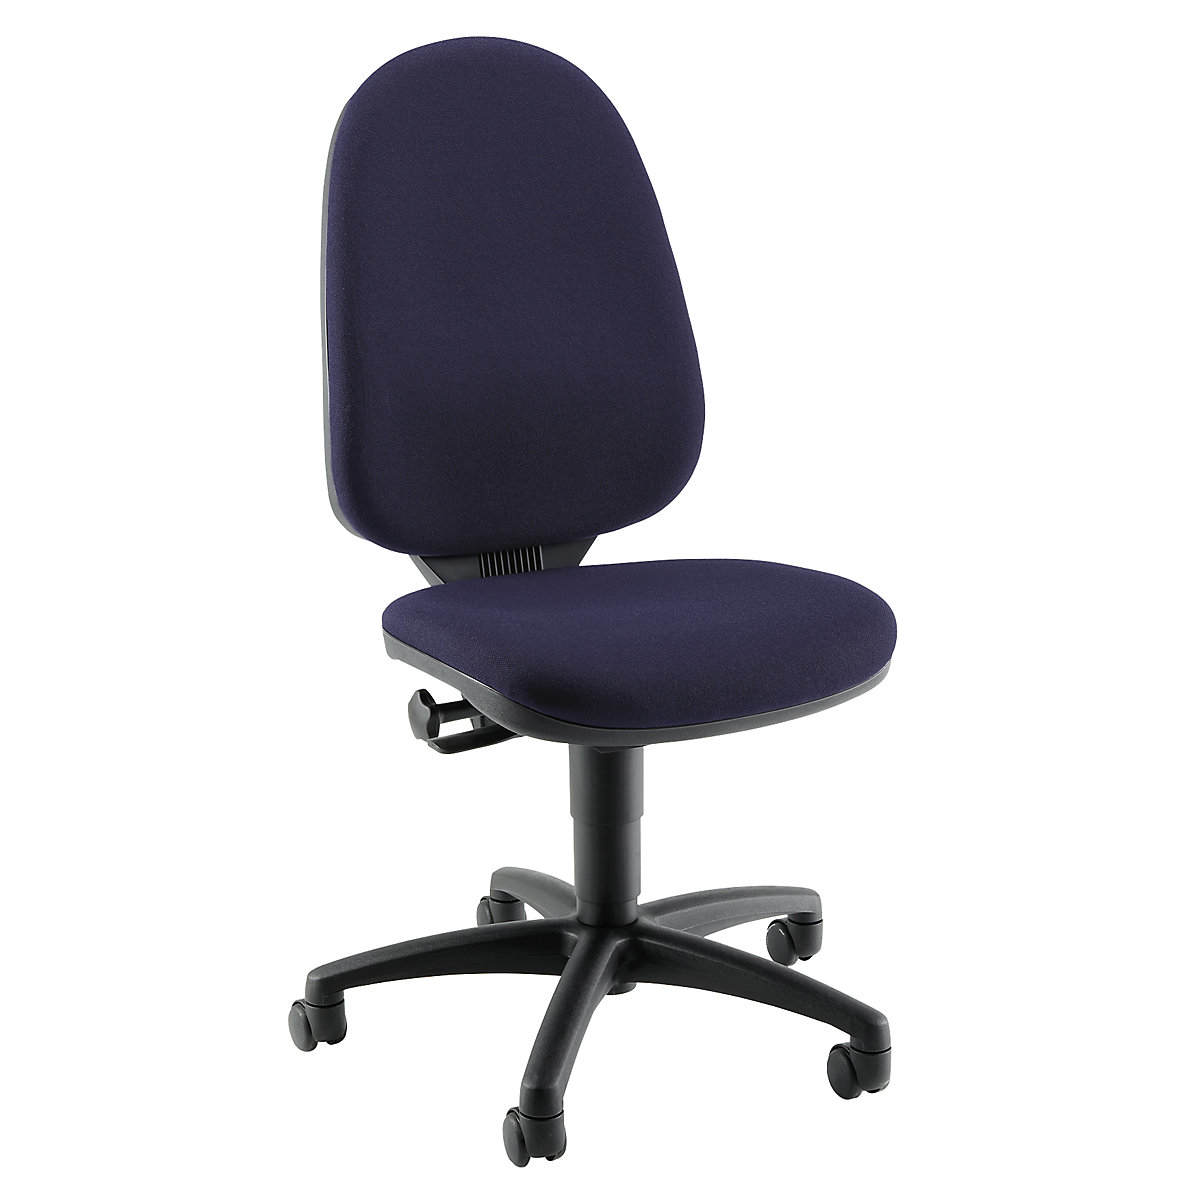 Standardna okretna stolica – Topstar, bez naslona za ruke, naslon za leđa 550 mm, postolje u crnoj, tkanina u plavoj boji, od 2 komada-4